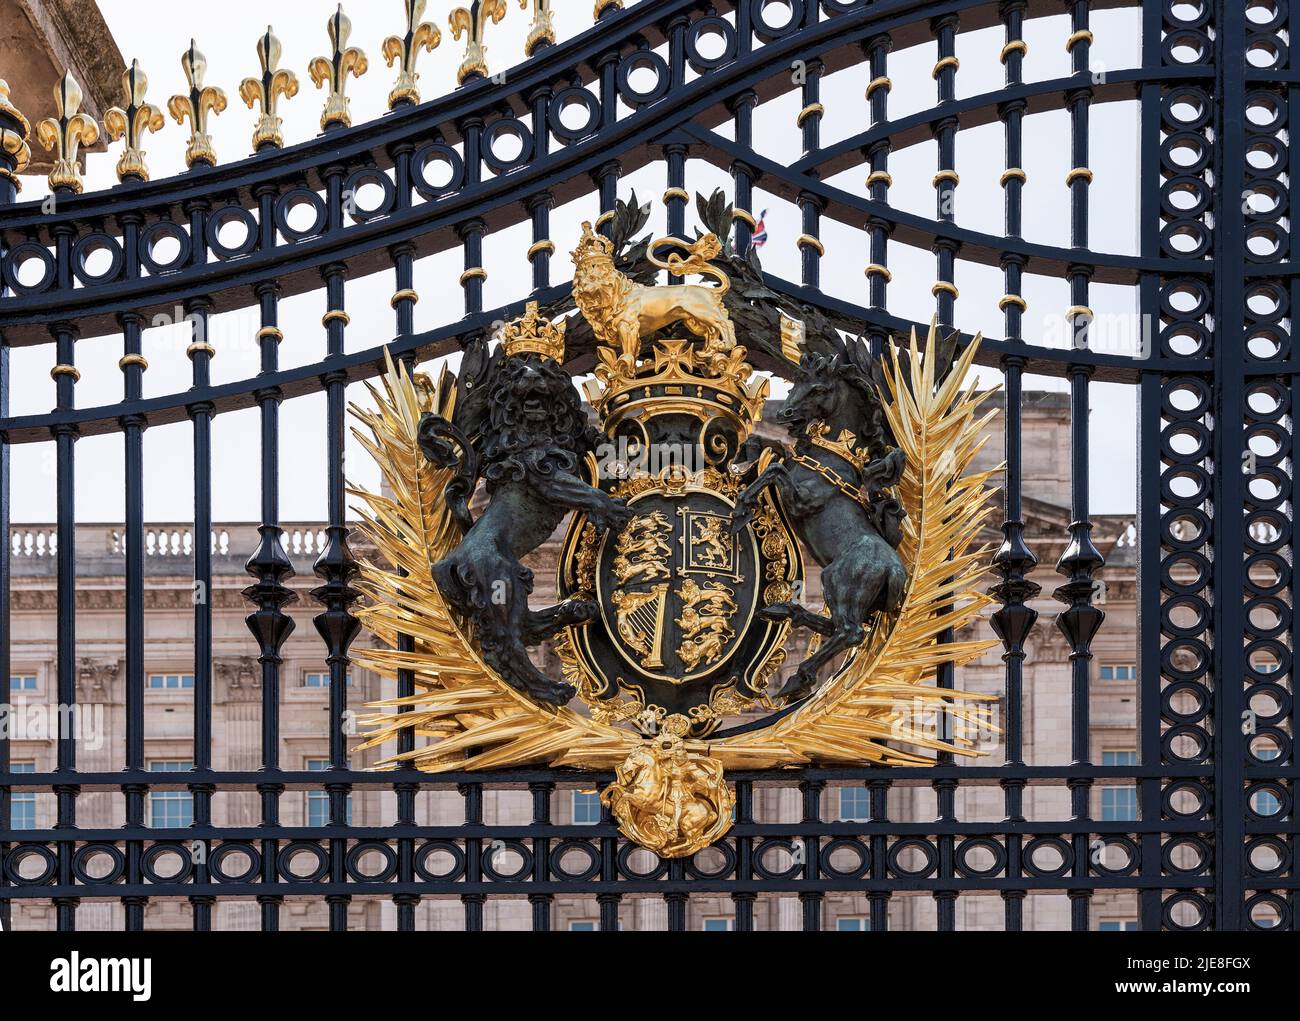 Stemma reale del Regno Unito, con leone rampante coronato e unicorno, sul cancello di Buckingham Palace, Londra, Inghilterra, Regno Unito Foto Stock